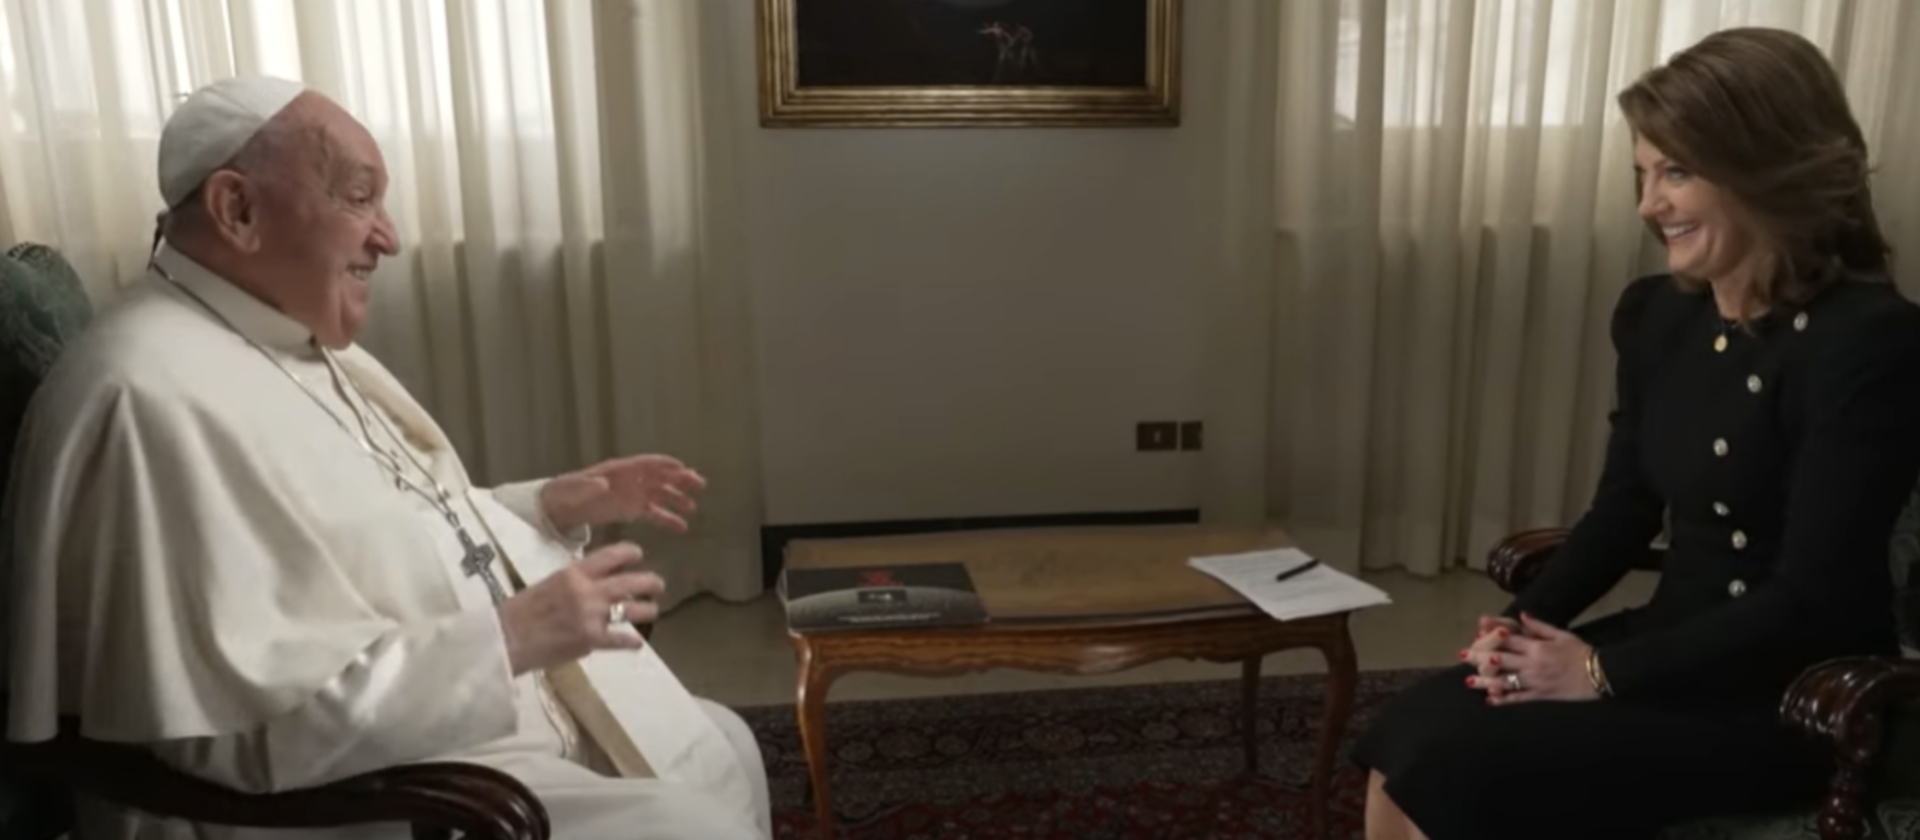 Le pape François en entretien avec la journaliste de CBS Norah O'Connell | capture d'écran CBS